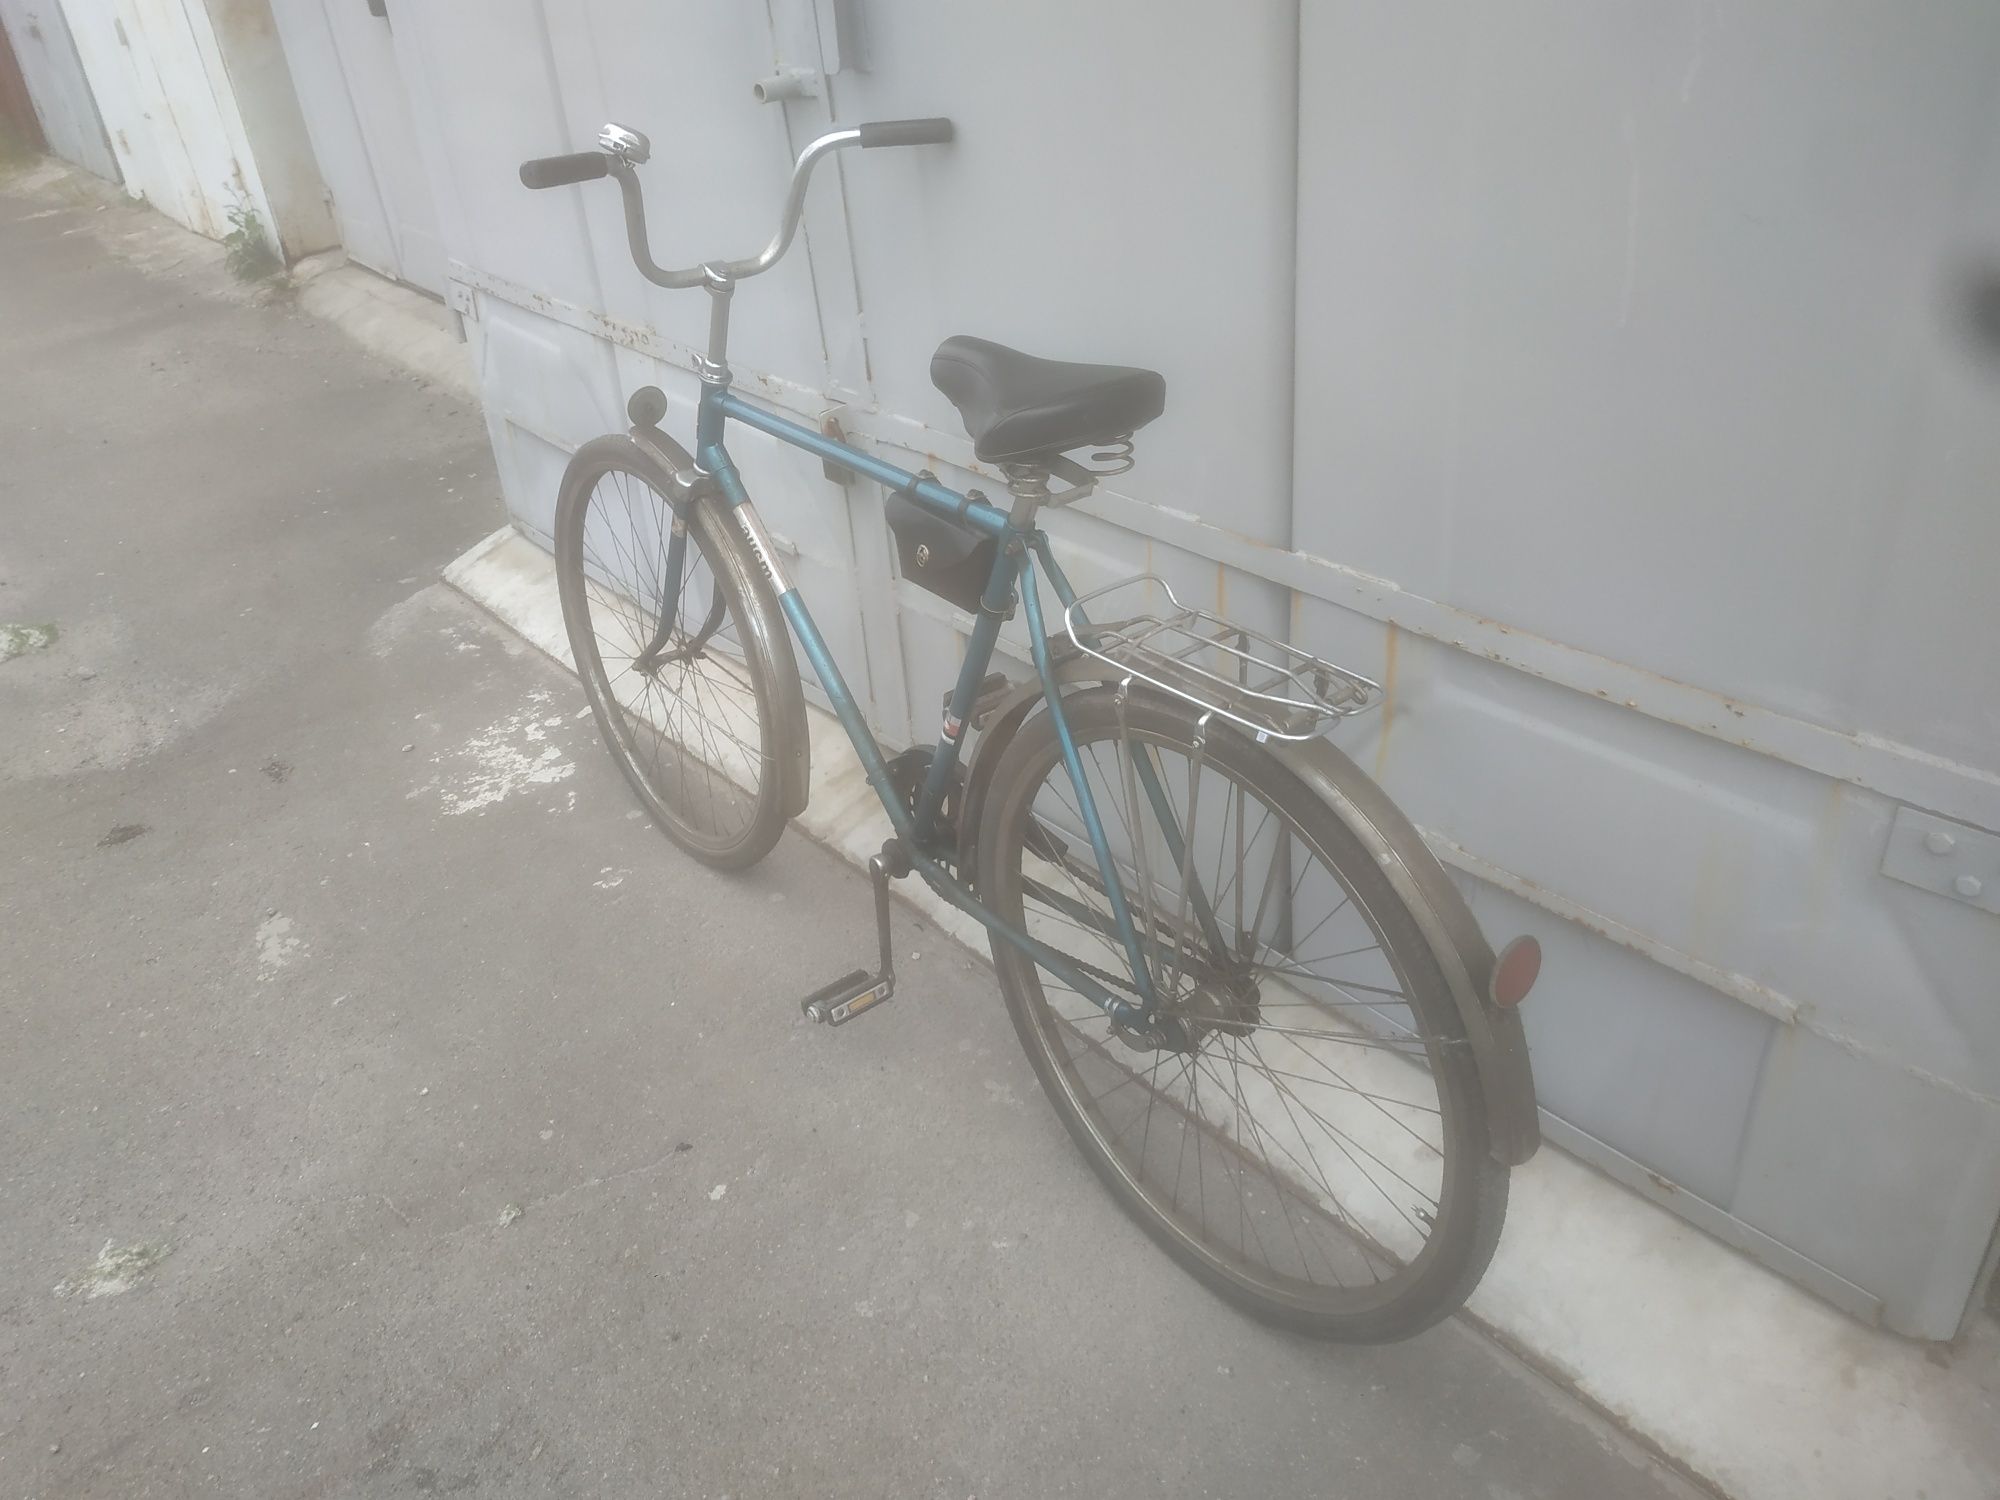 Оригинальный новый велосипед Минск времён СССР.